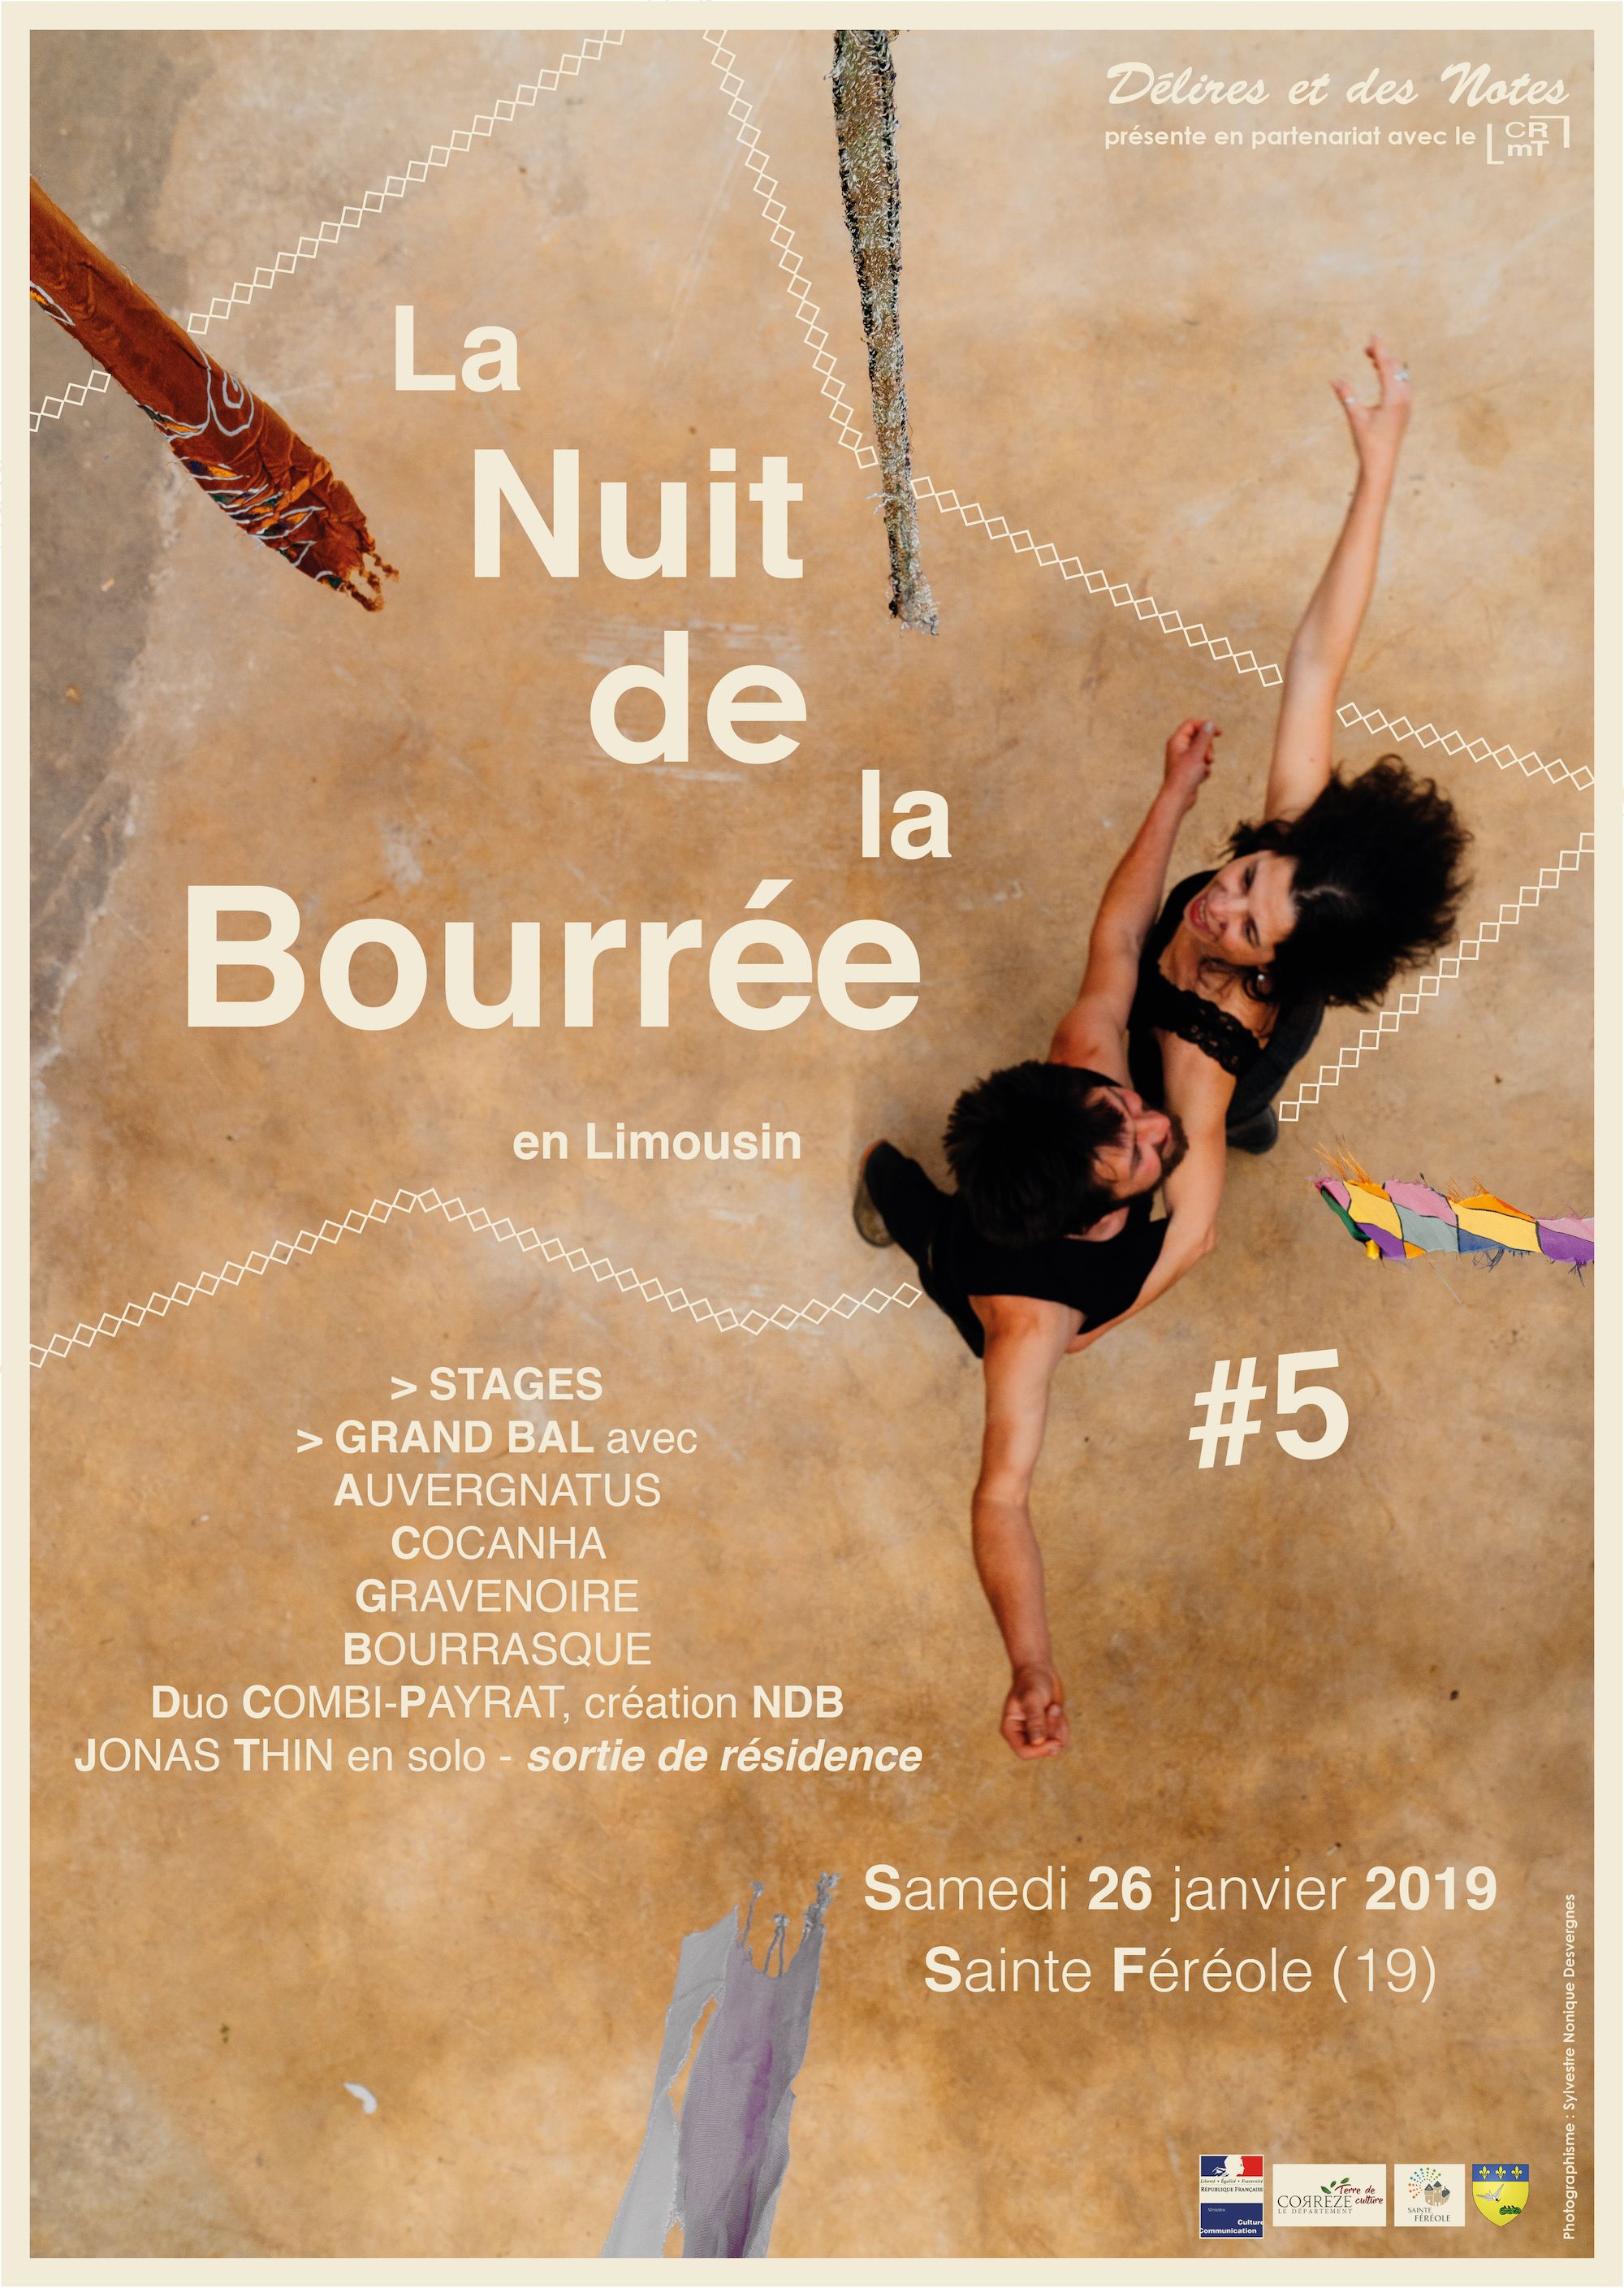 Nuit de la Bourrée en Limousin #5 2019